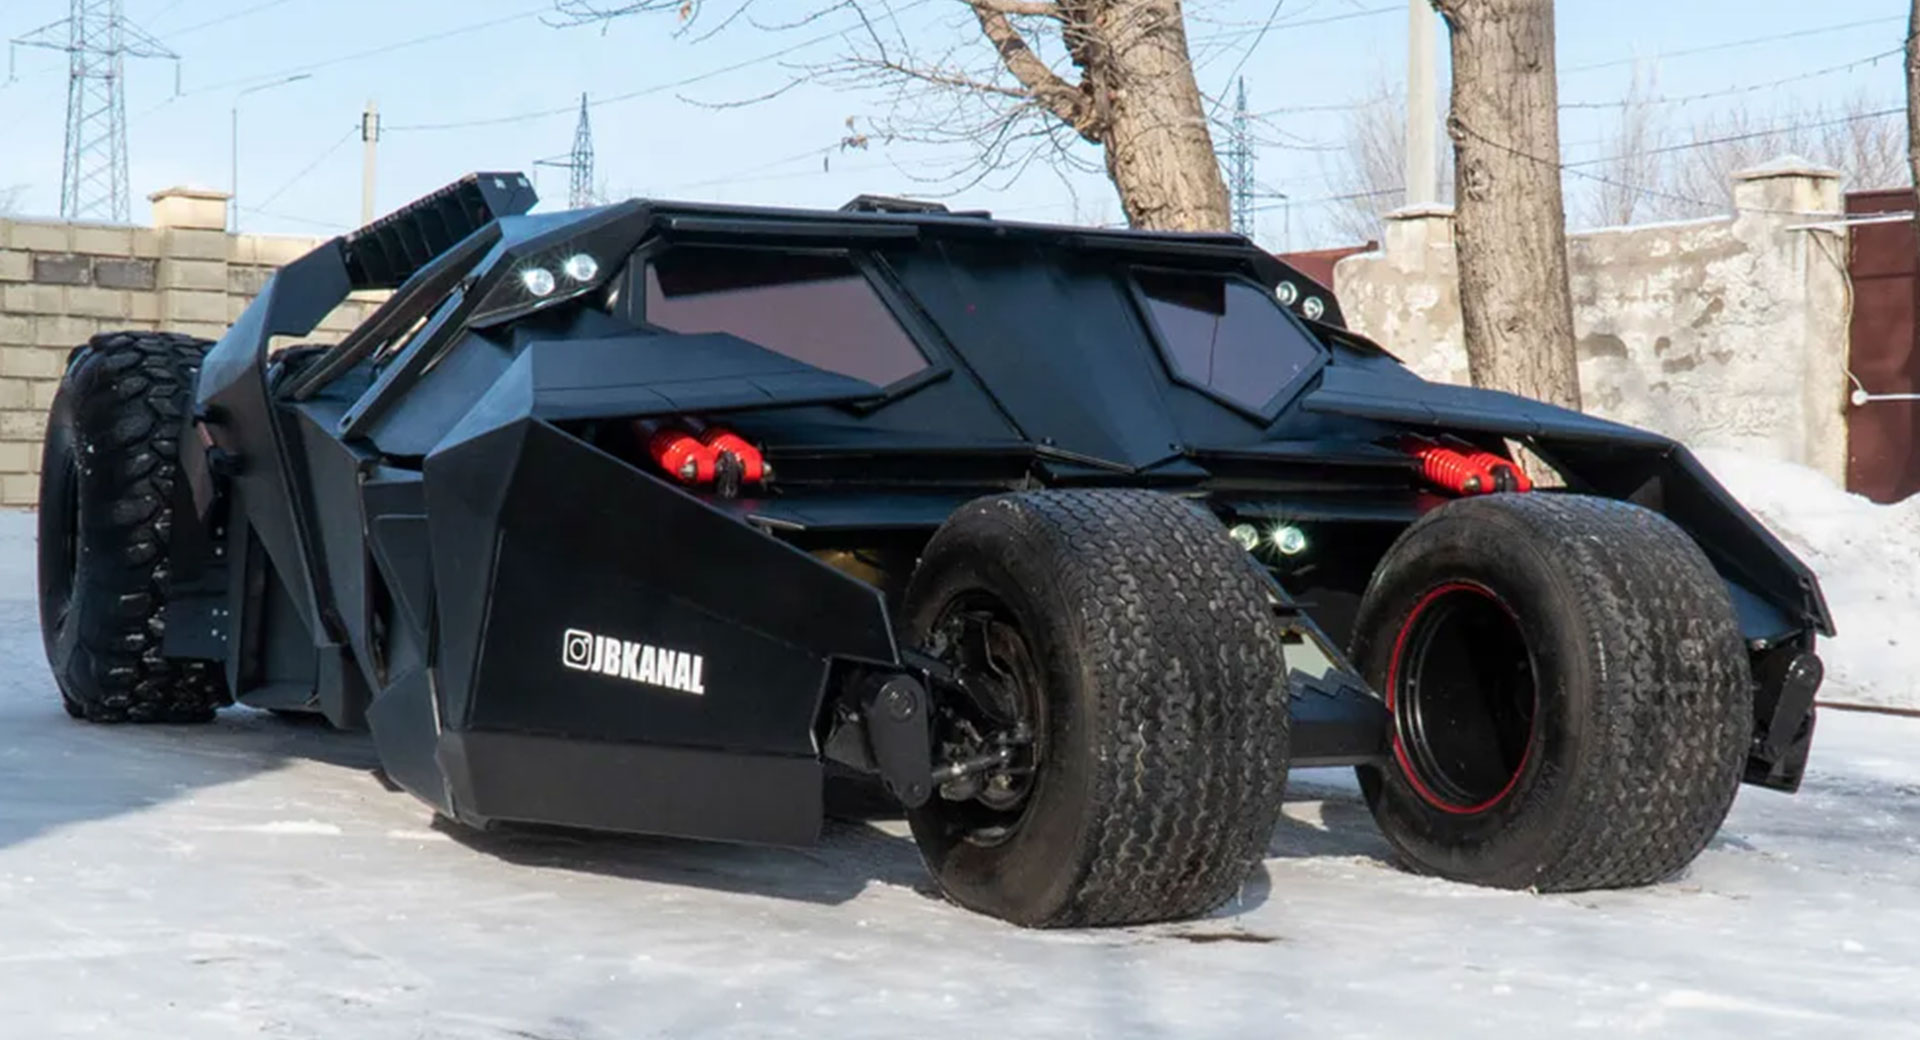 شاهد.. نسخة من سيارة باتمان الخارقة مع محرِّك "تويوتا V8" وهيكل مصنوع يدوياً بالكامل للبيع مقابل 400 ألف دولار 2 12/5/2022 - 7:47 ص